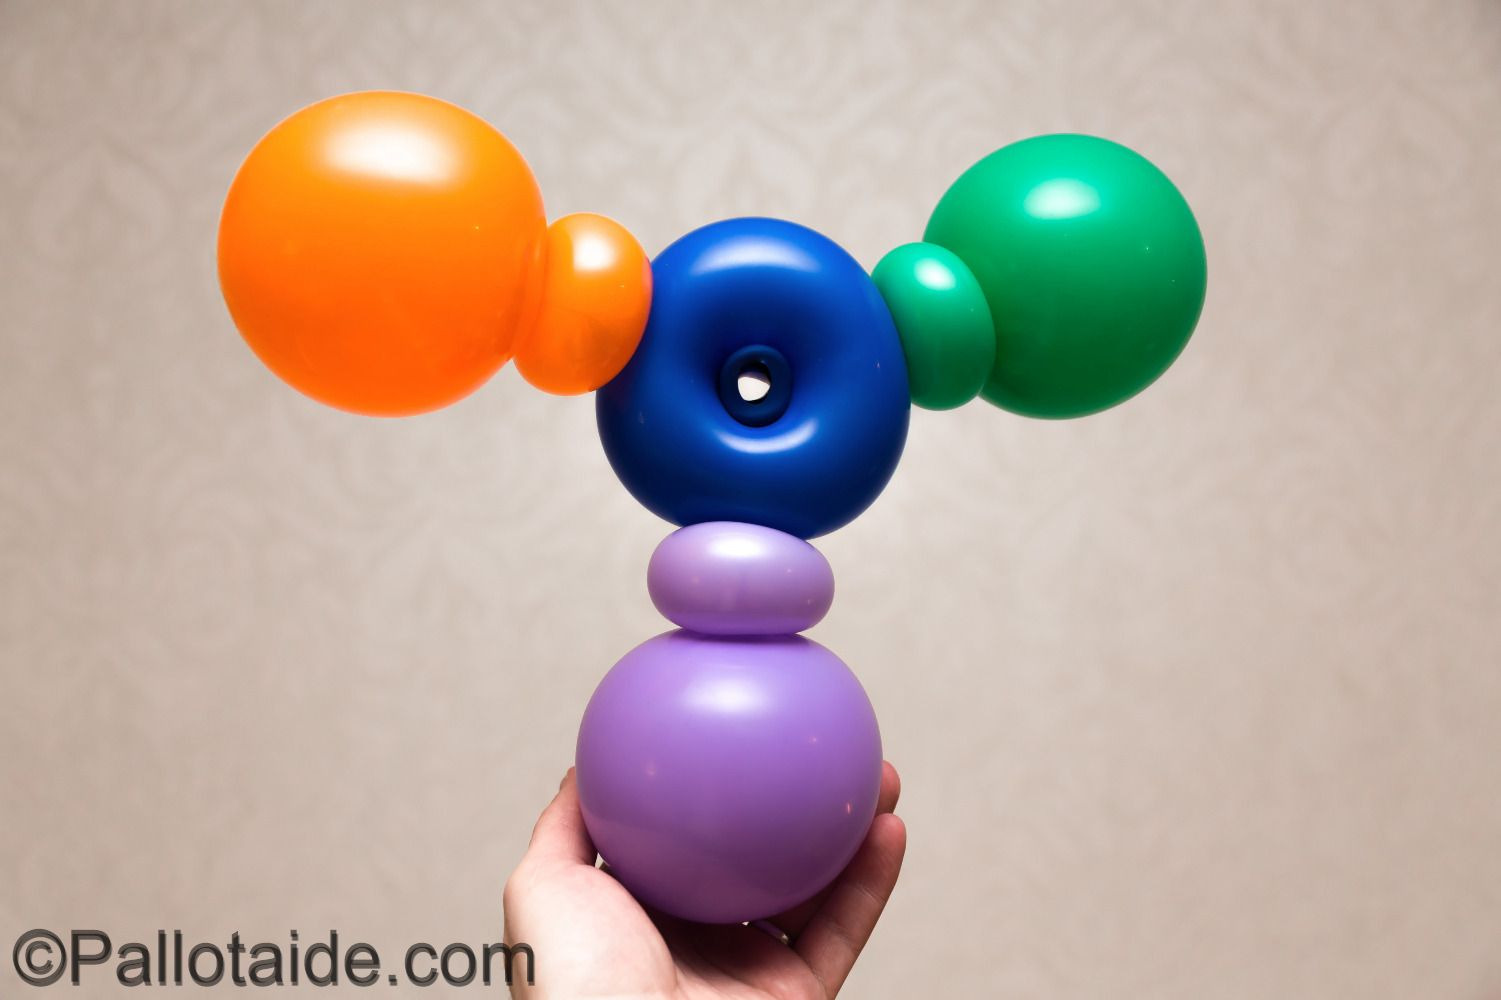 fidget spinner - made using 100% latex balloons by Pallotaide - tehty pelkistä lateksi-ilmapalloista.